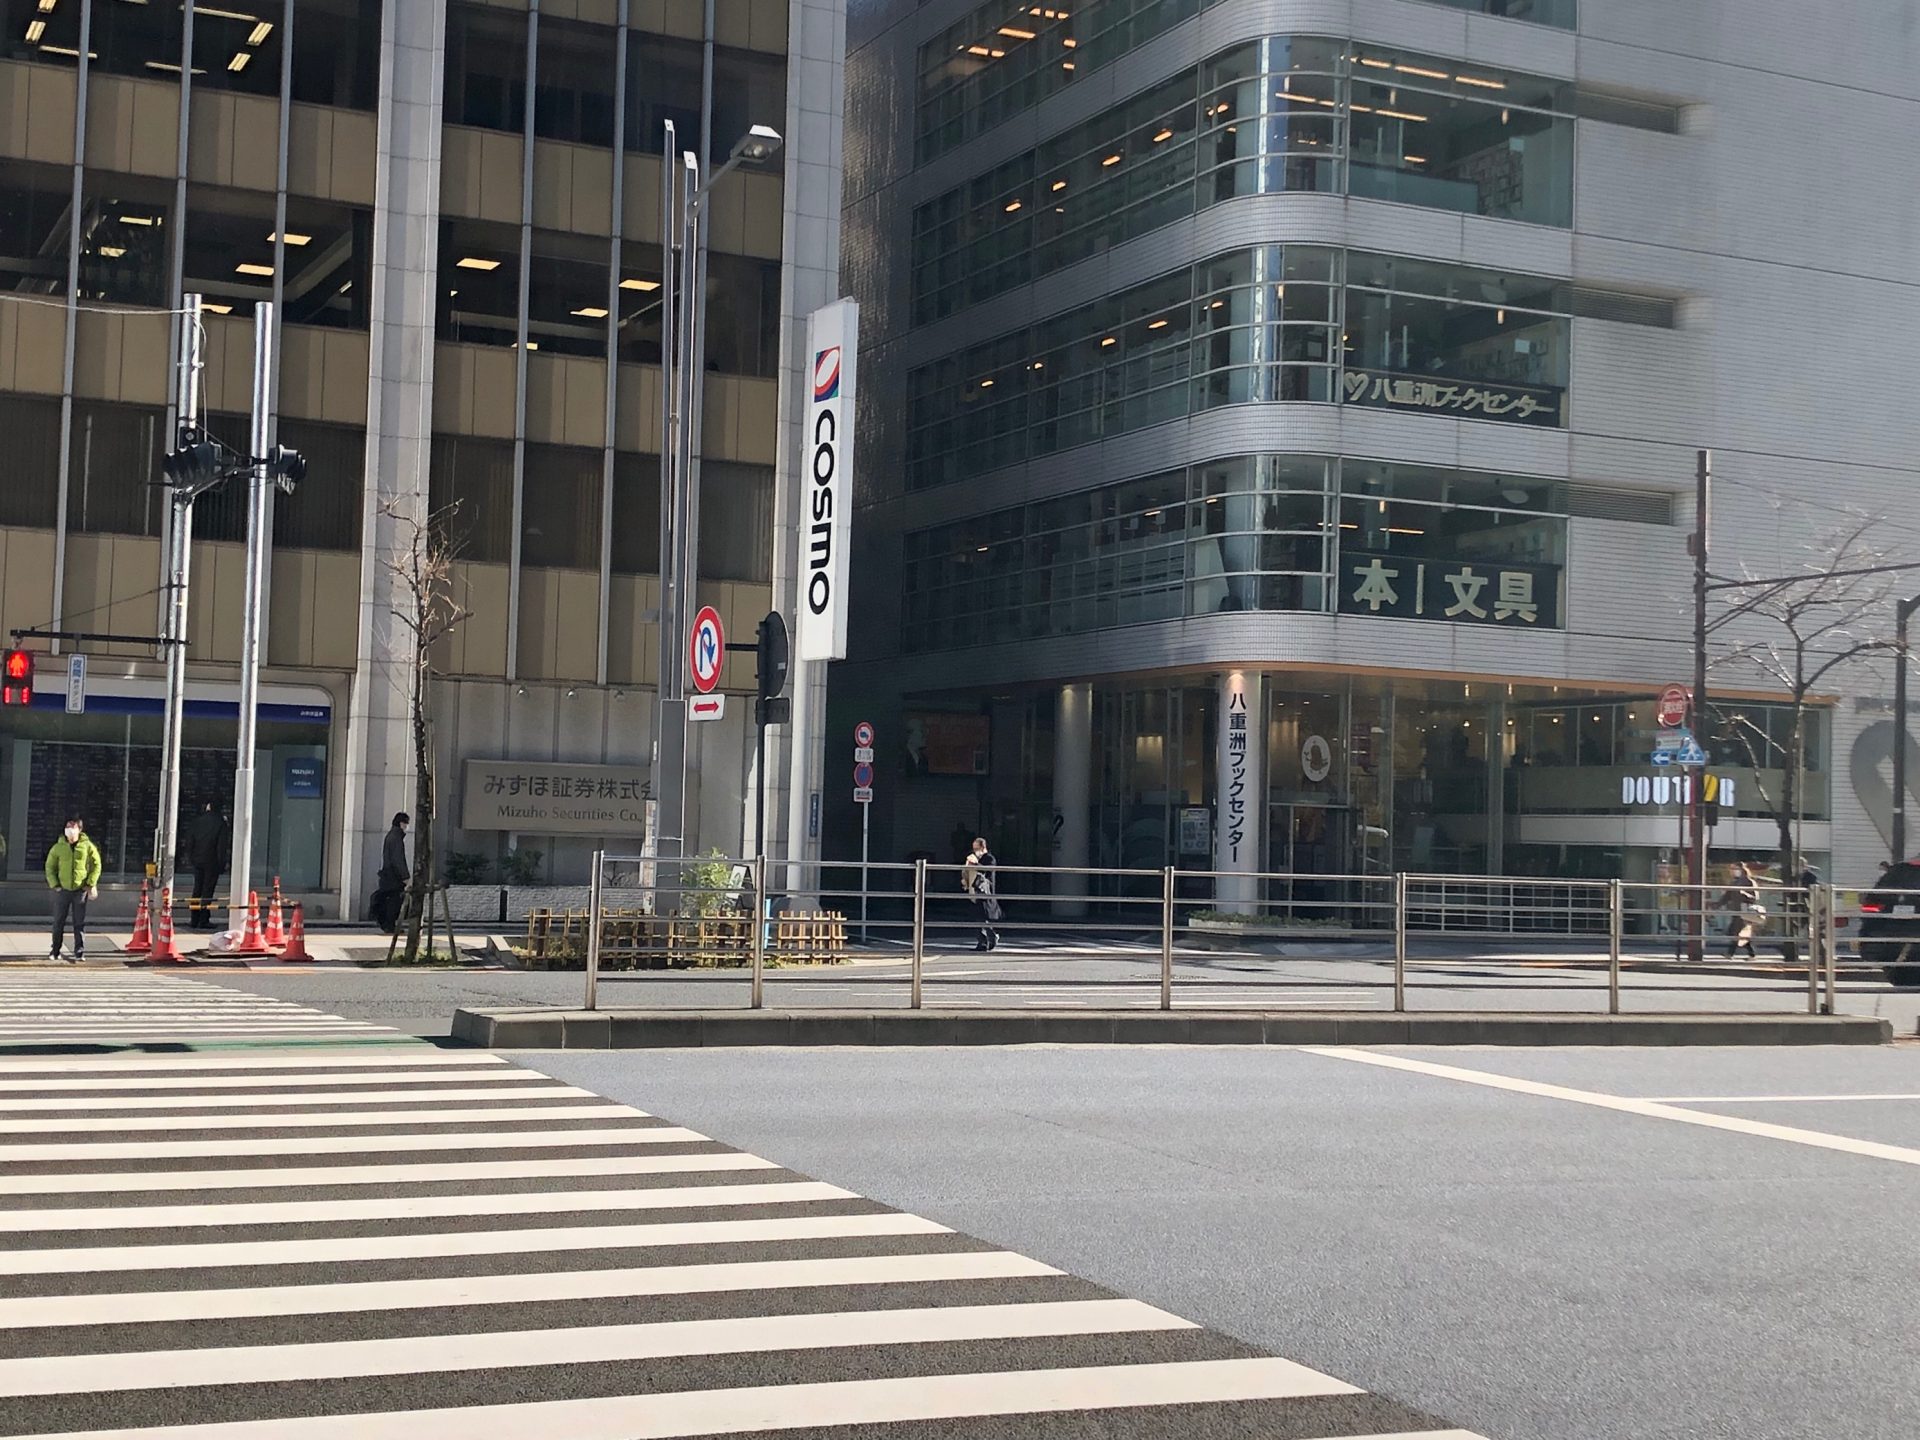 ビジネスエアポート京橋 1つ目の横断歩道を渡り、八重洲ブックセンターの手前の路地を道なりに直進